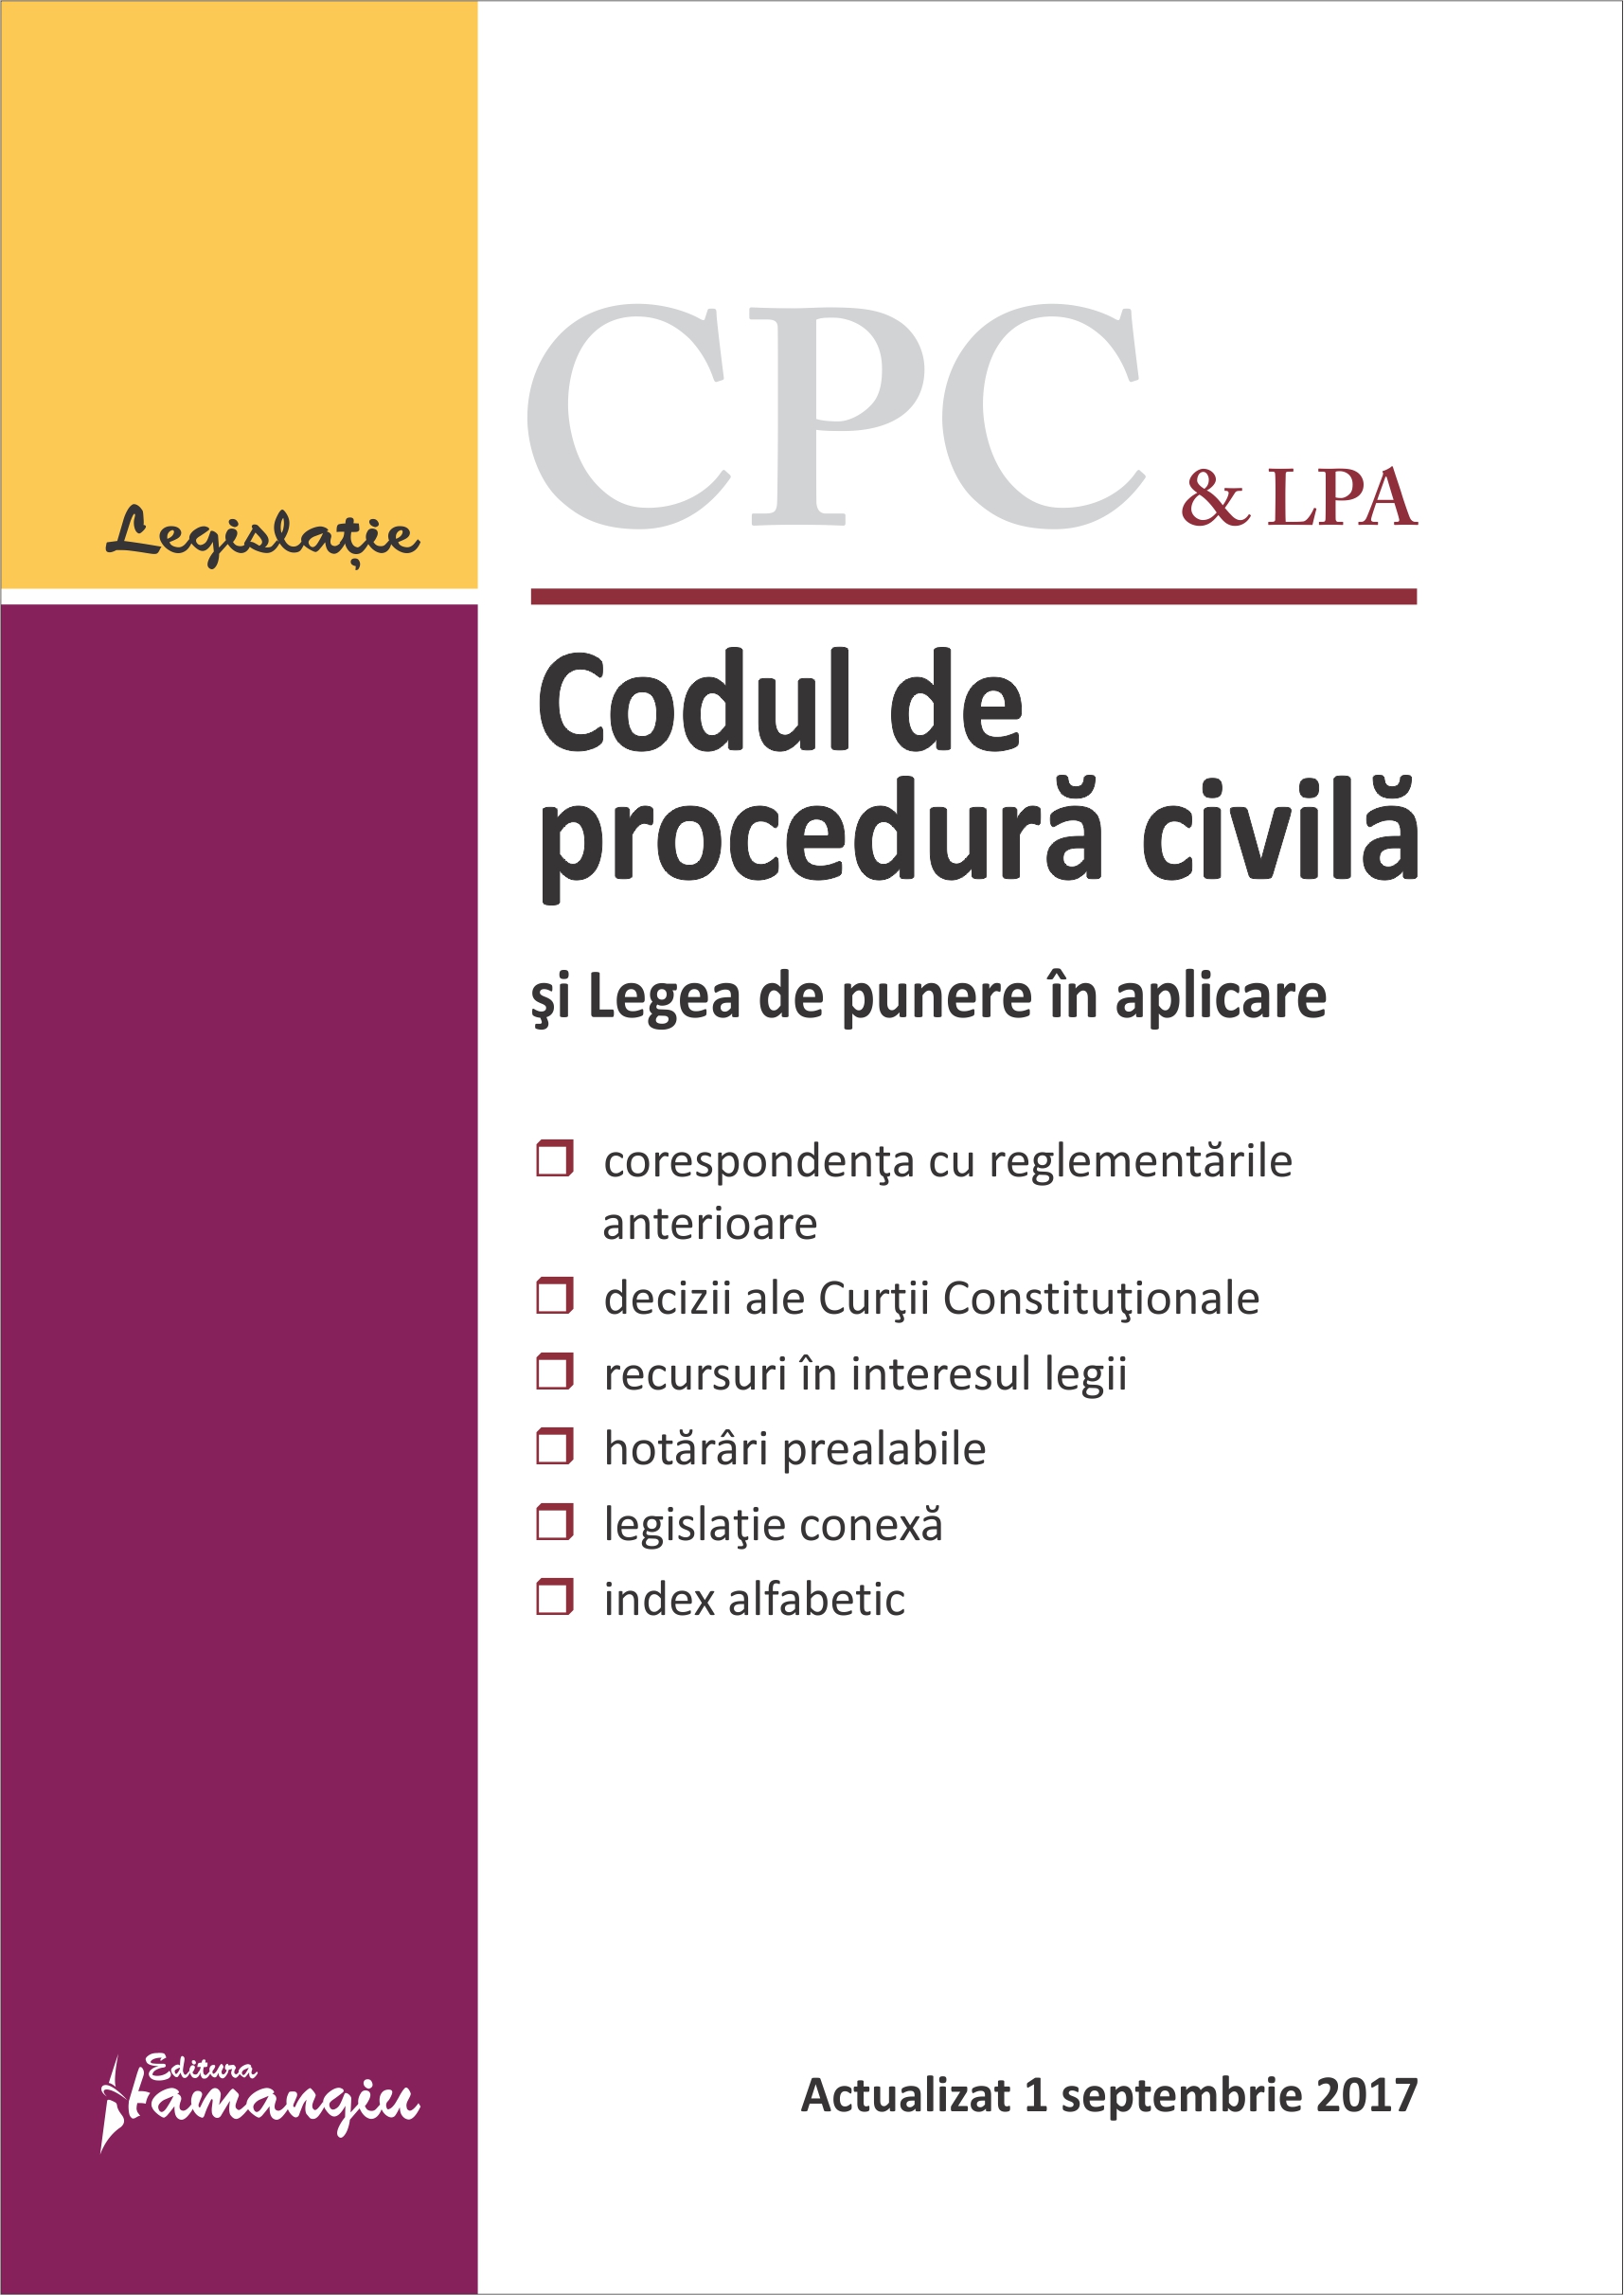 Codul de procedura civila si 12 legi uzuale Septembrie 2017